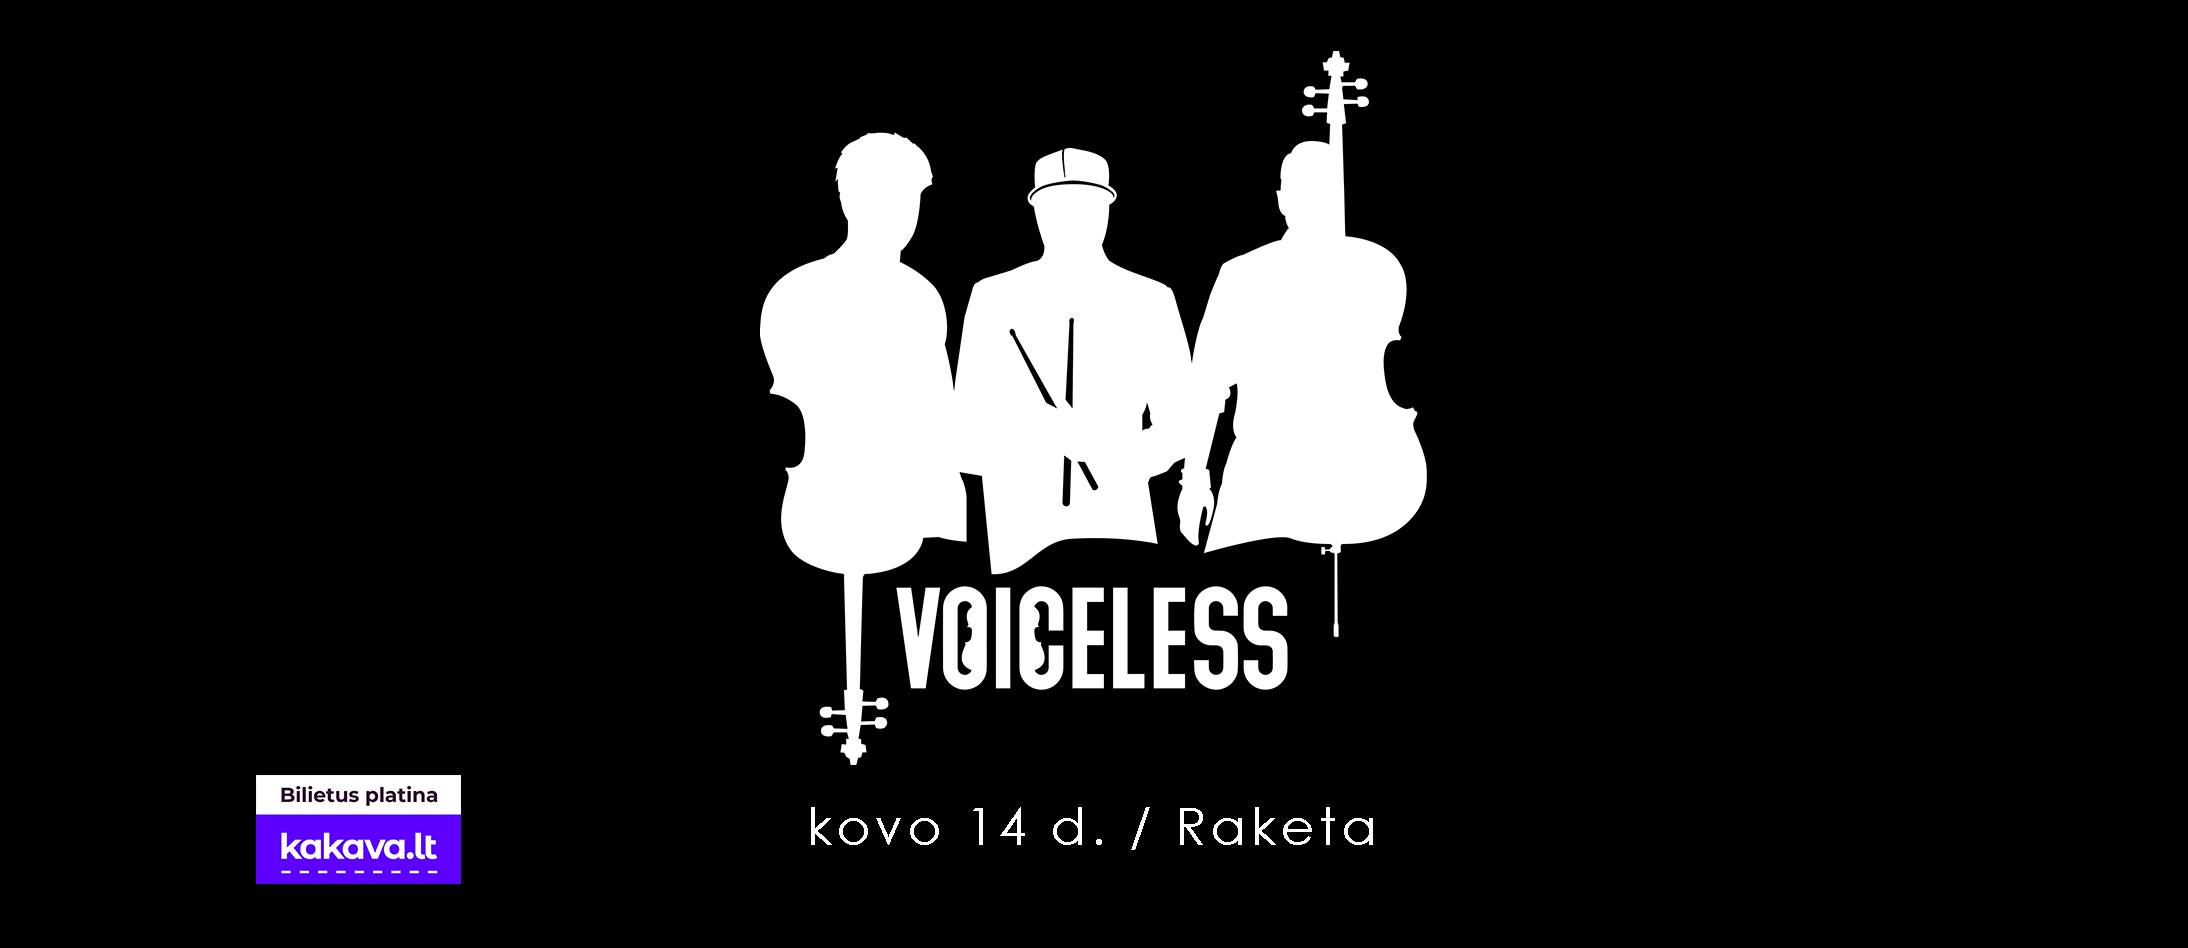 Koncertas „Raketoje”: Voiceless koncertas | ATKELTAS iš 04.30